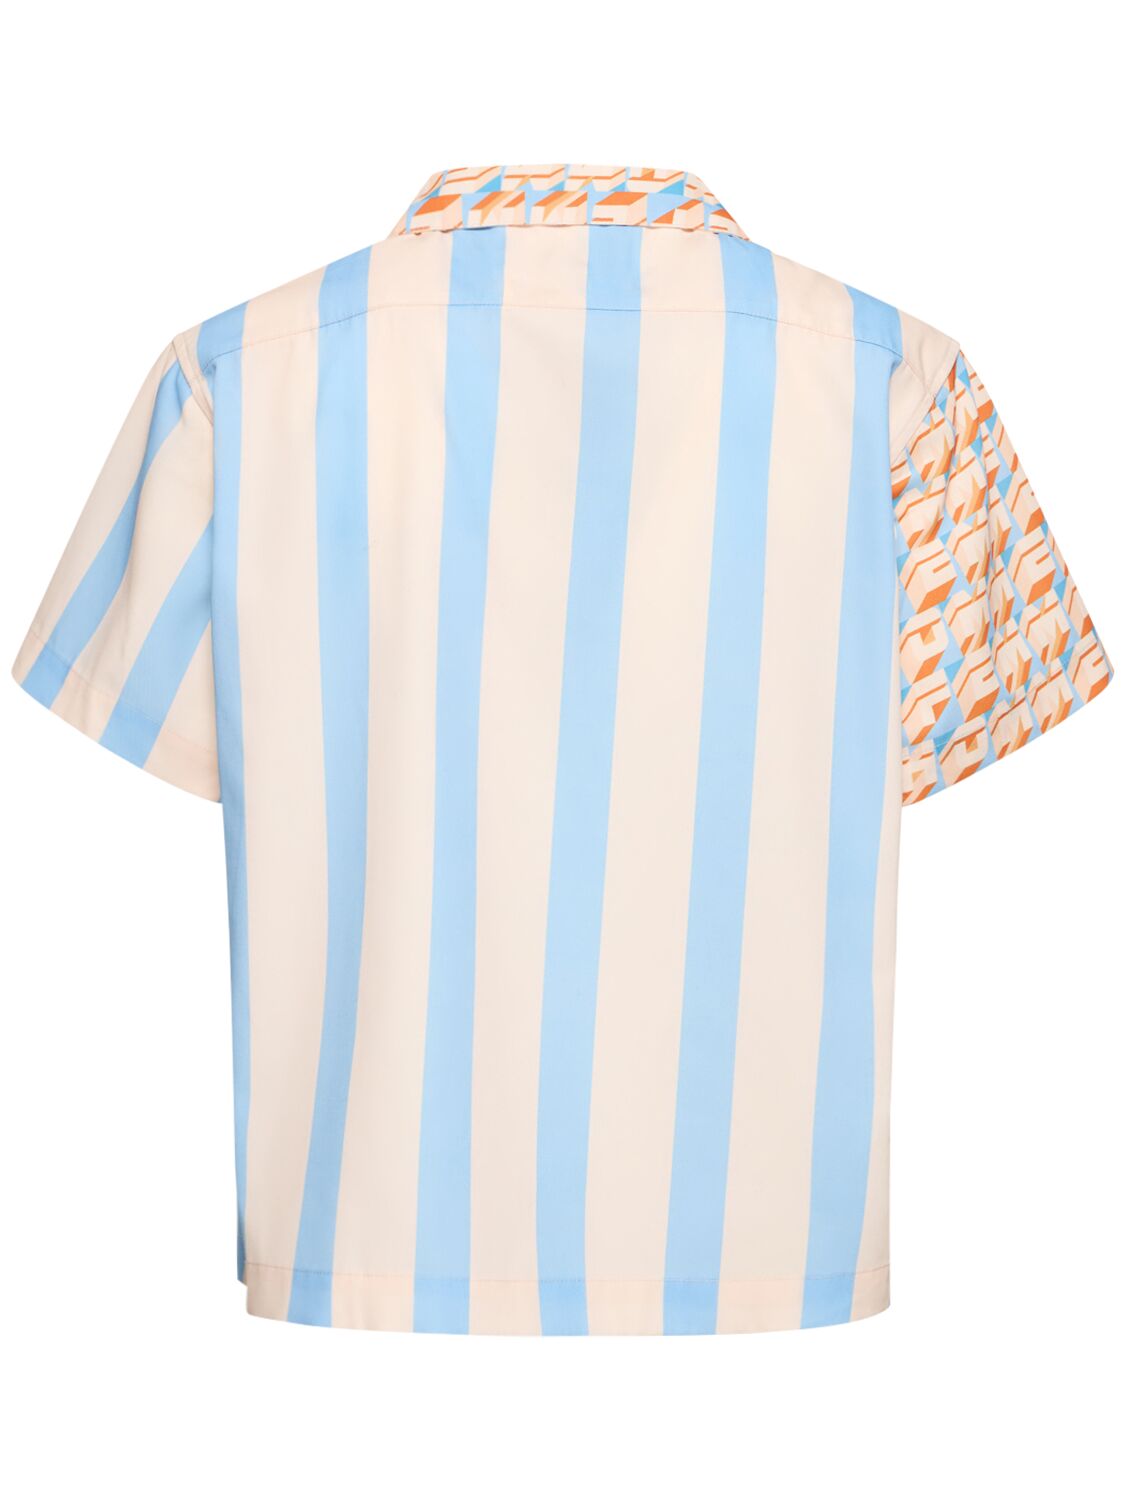 Shop Homme + Femme La Hologram & Stripe Printed Poly Shirt In Orange,blue